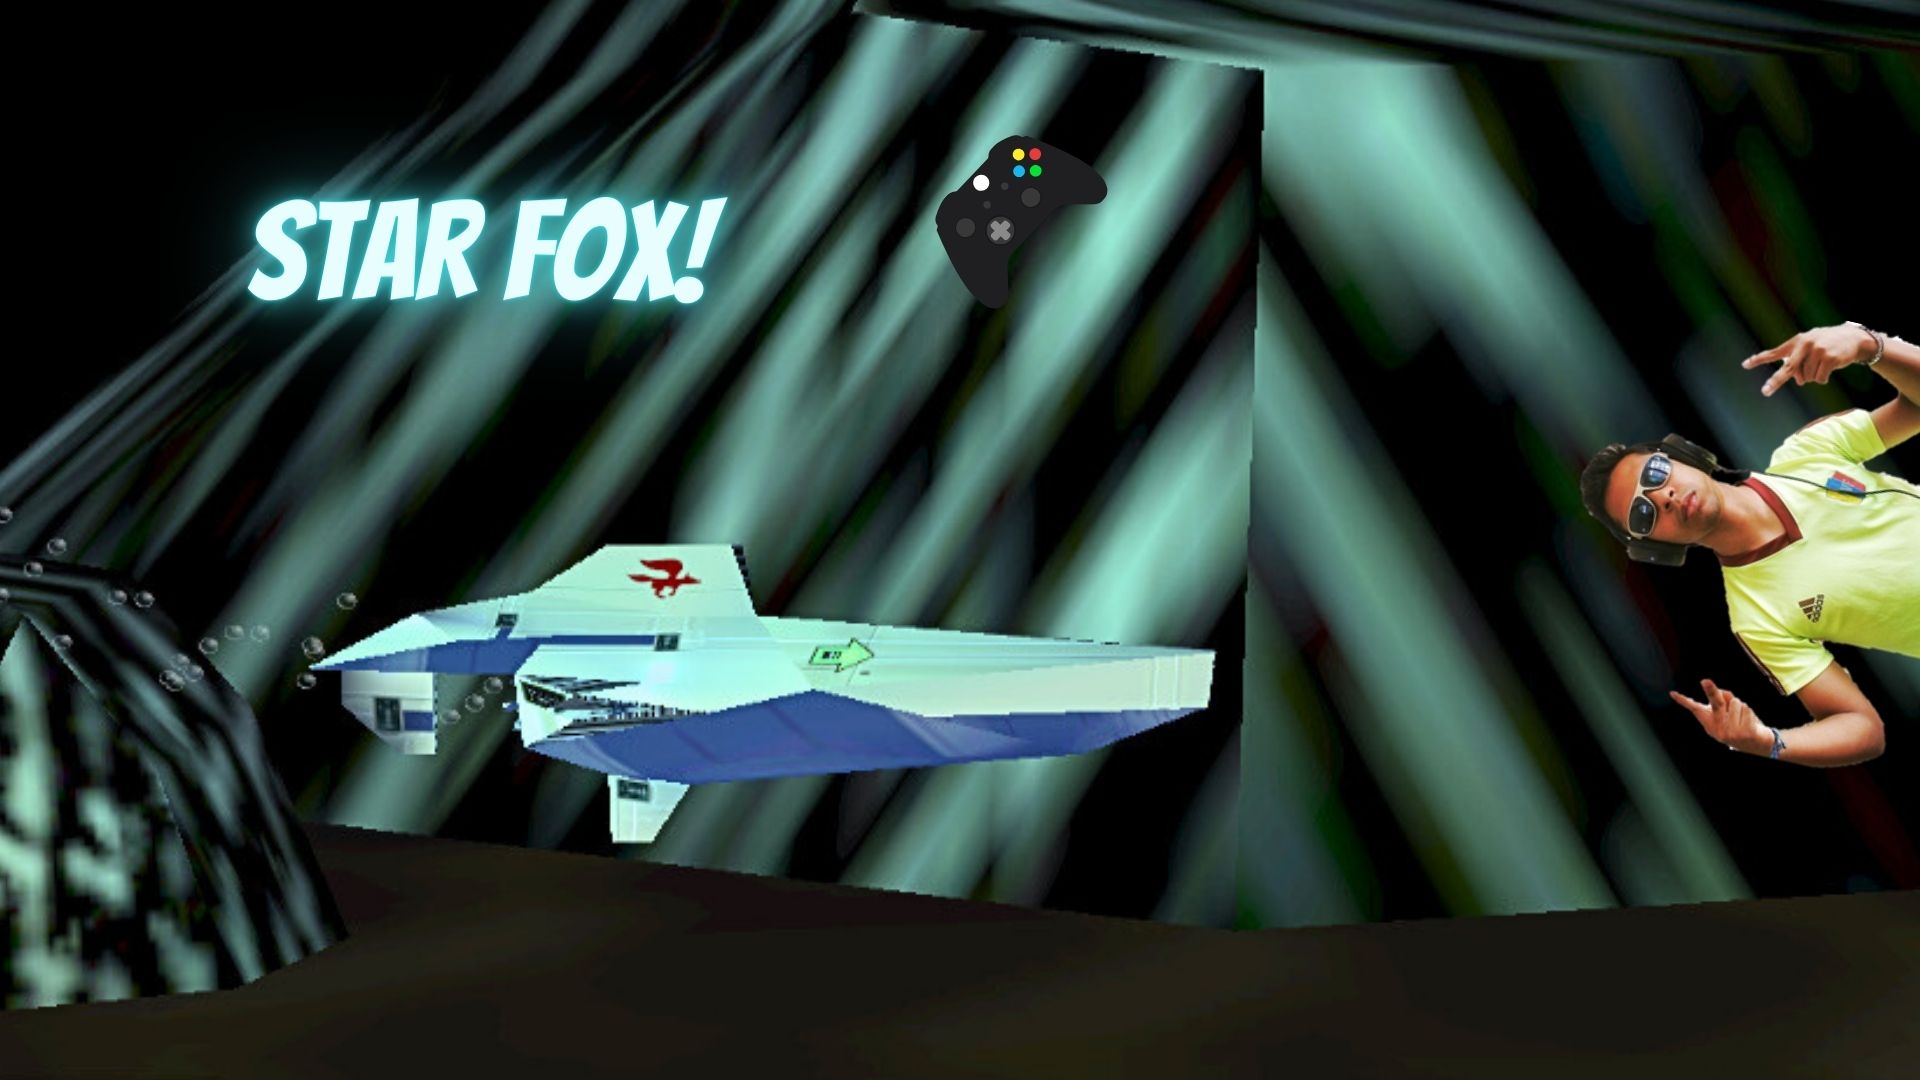 Star Fox!.jpg